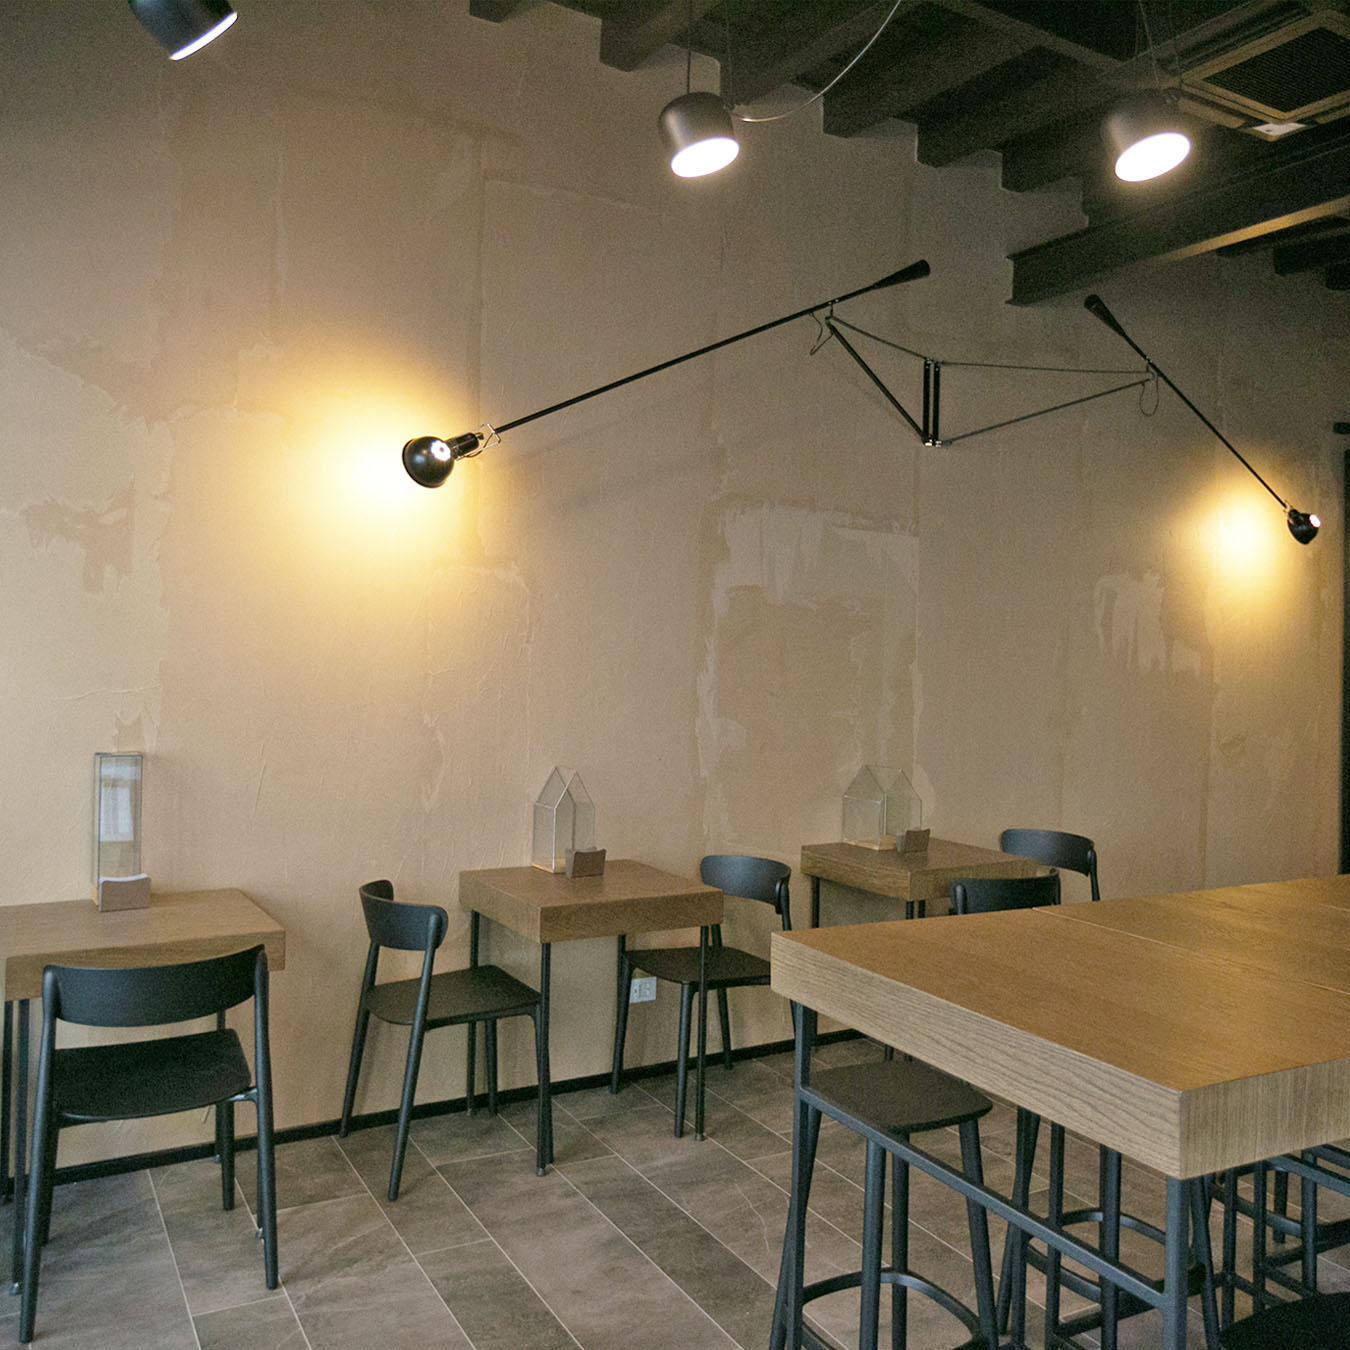 Interni-bar-caffetteria-design-legno-sedie-tavoli-bancone-lampade